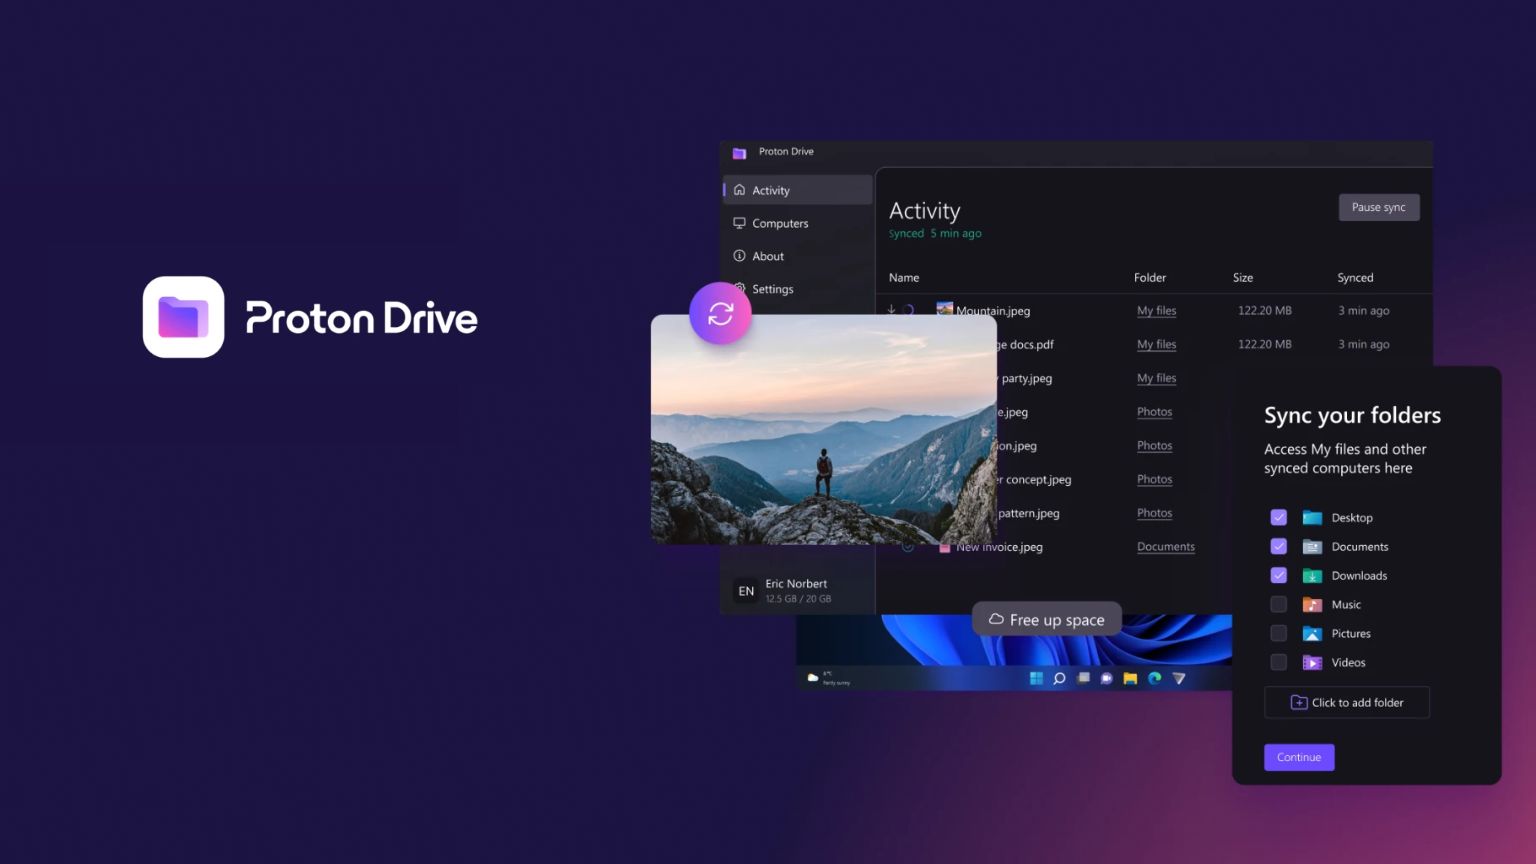 Proton Drive Desktop Client Arrives on Windows